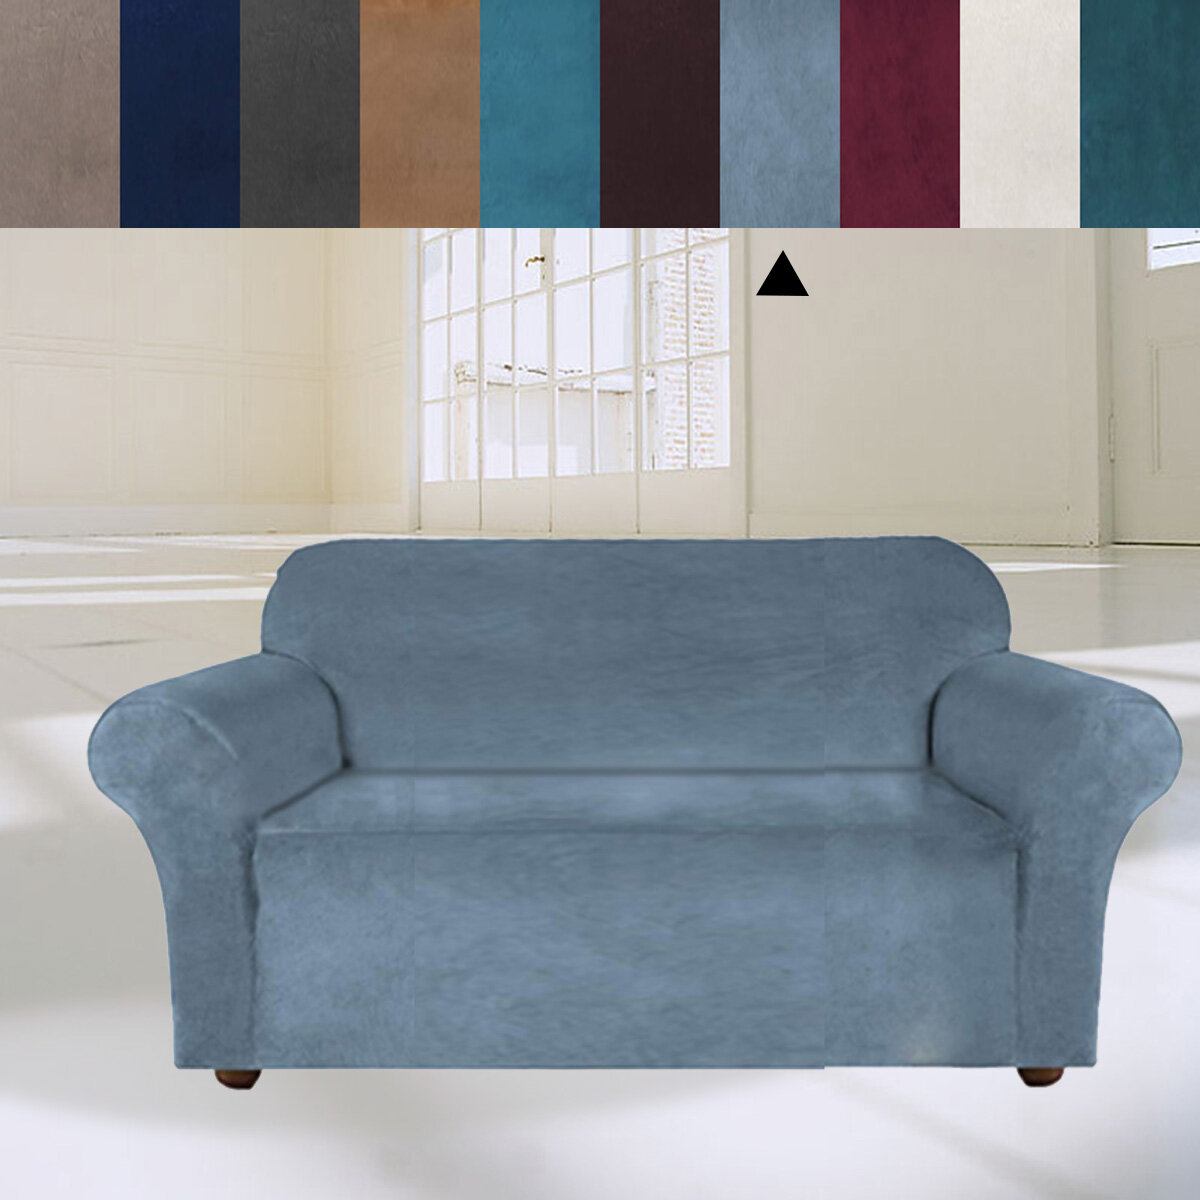 غطاء أريكة مخملي مرن من 3 مقاعد عالمي نقي اللون غطاء مقعد كرسي واقٍ للأريكة غطاء ممتد لتزيين أثاث المكاتب والمنزل غطاء أ